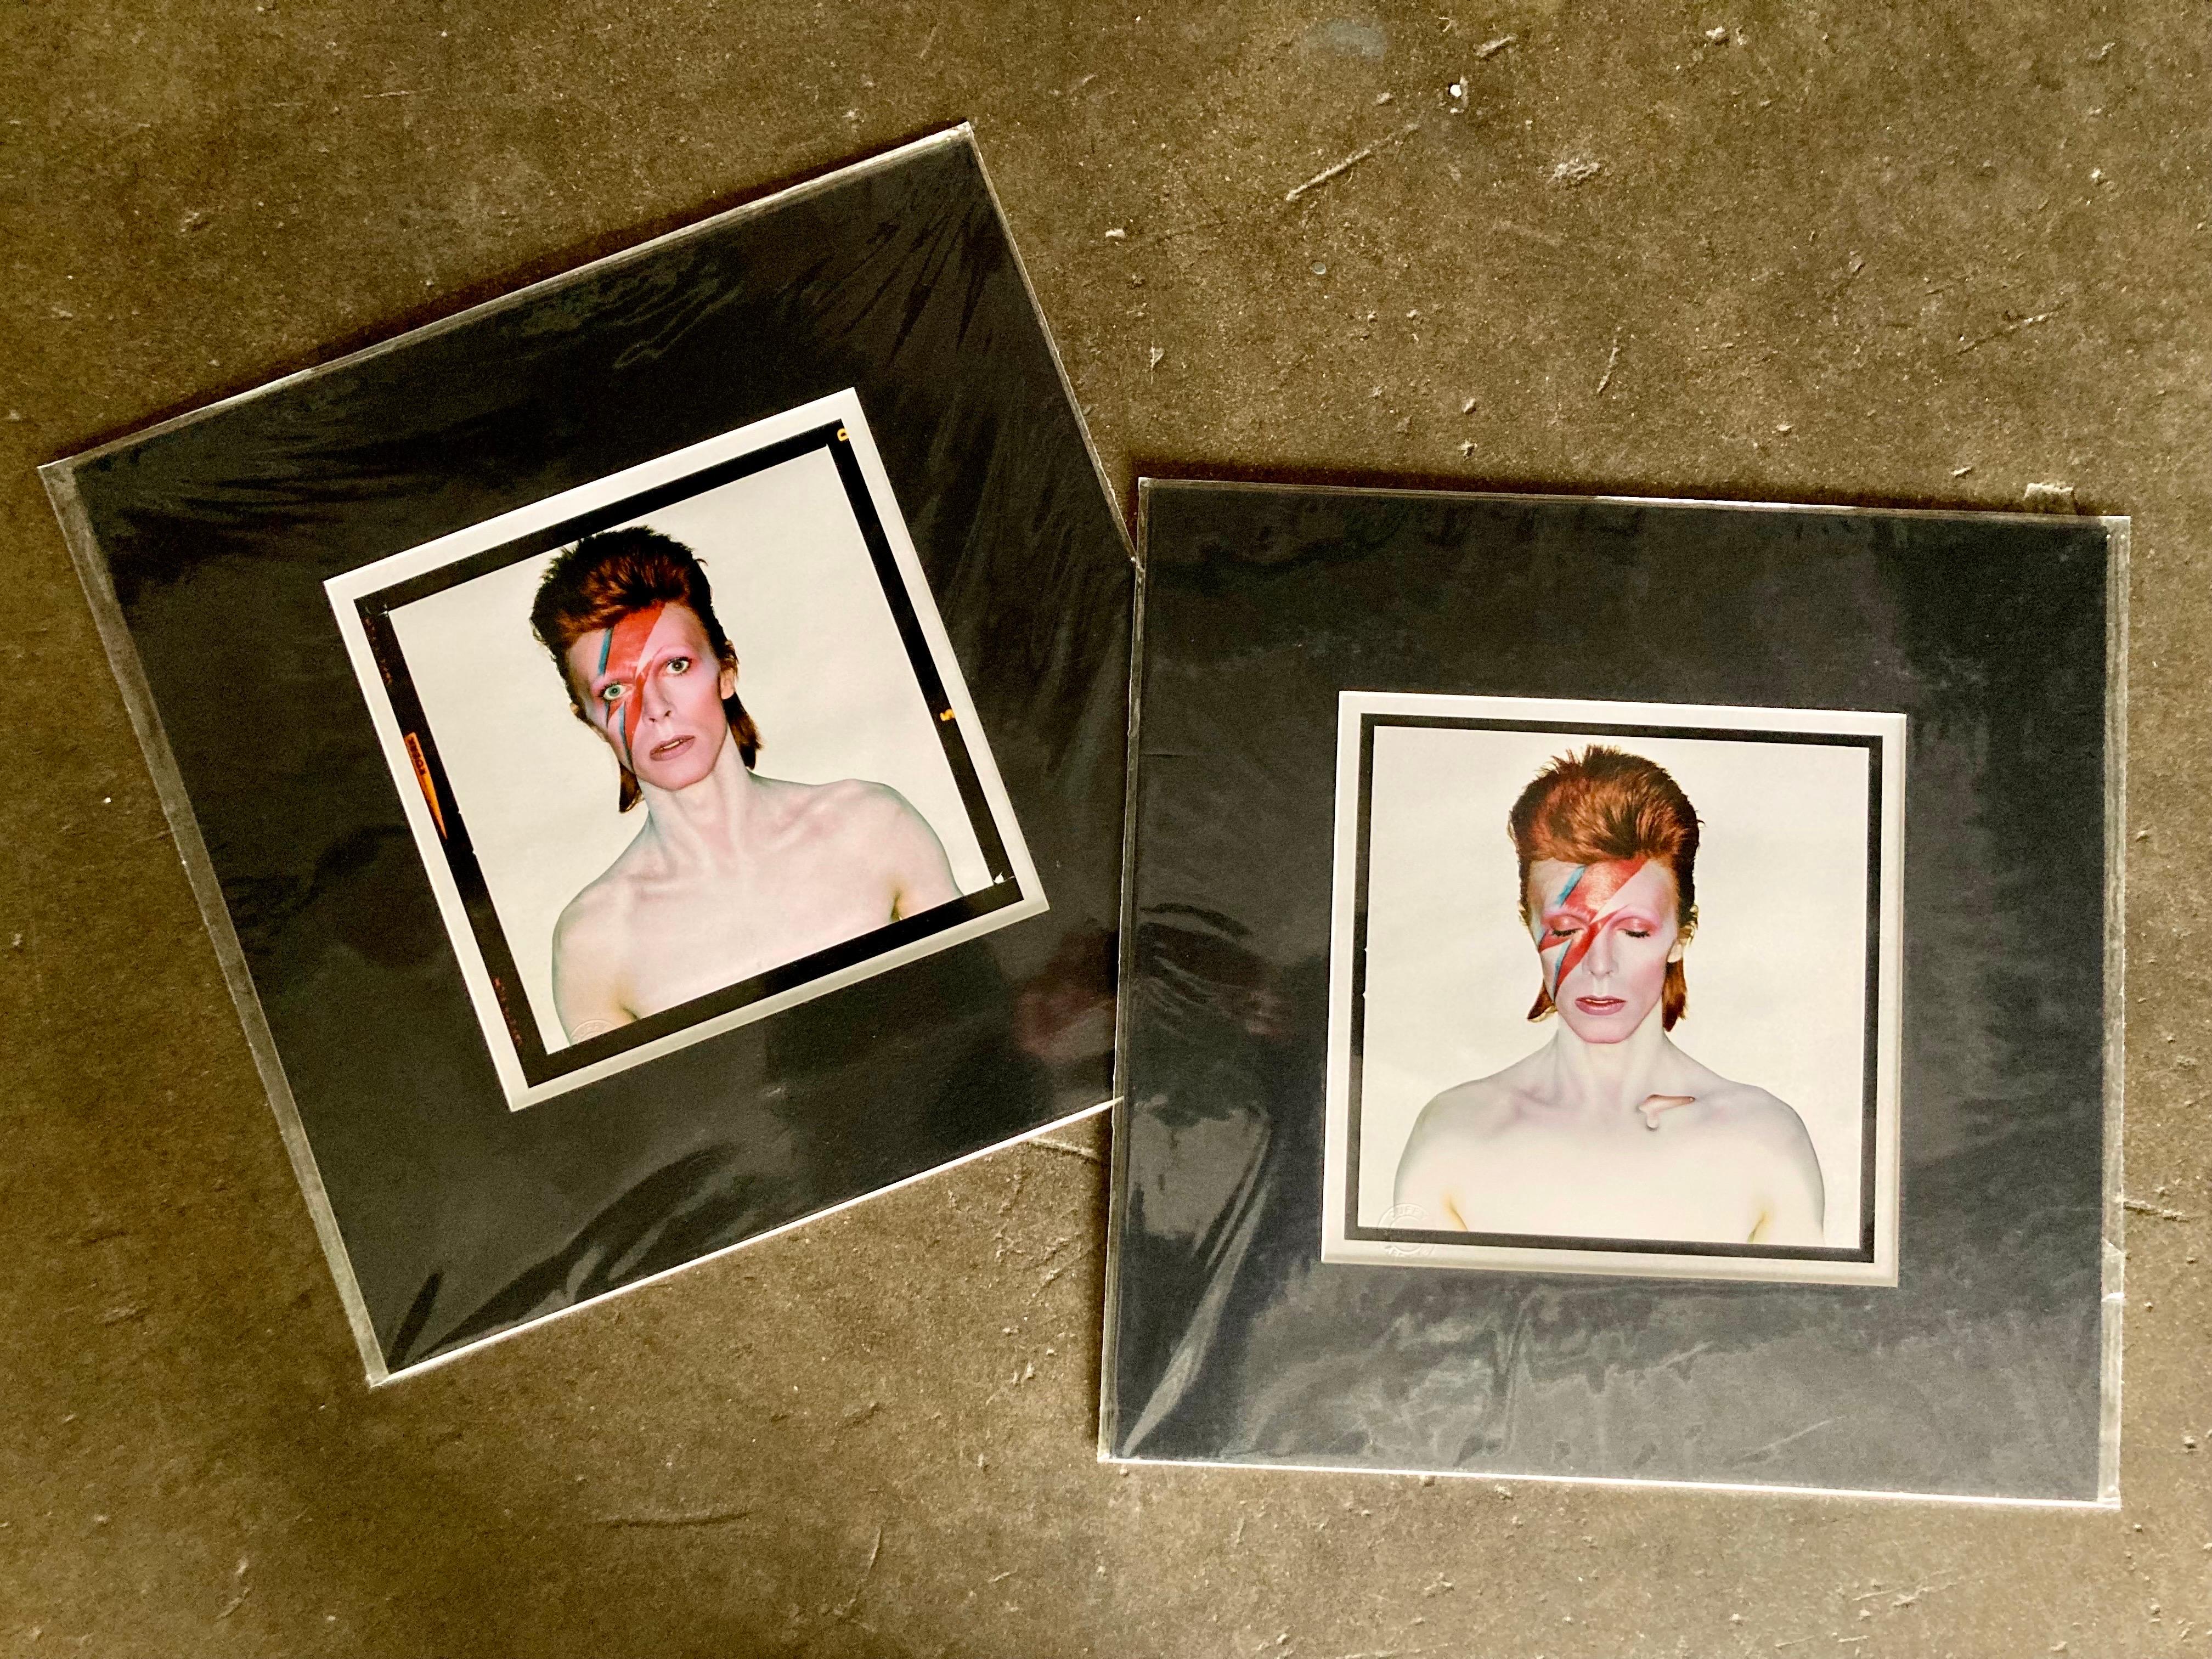 Lot de 2 tirages, tous deux pré-matés avec des passe-partout noirs. David Bowie par Brian Duffy lors des séances de création de la pochette de l'album Aladdin Sane en 1973. L'un des tirages est la couverture originale, le second est la version 